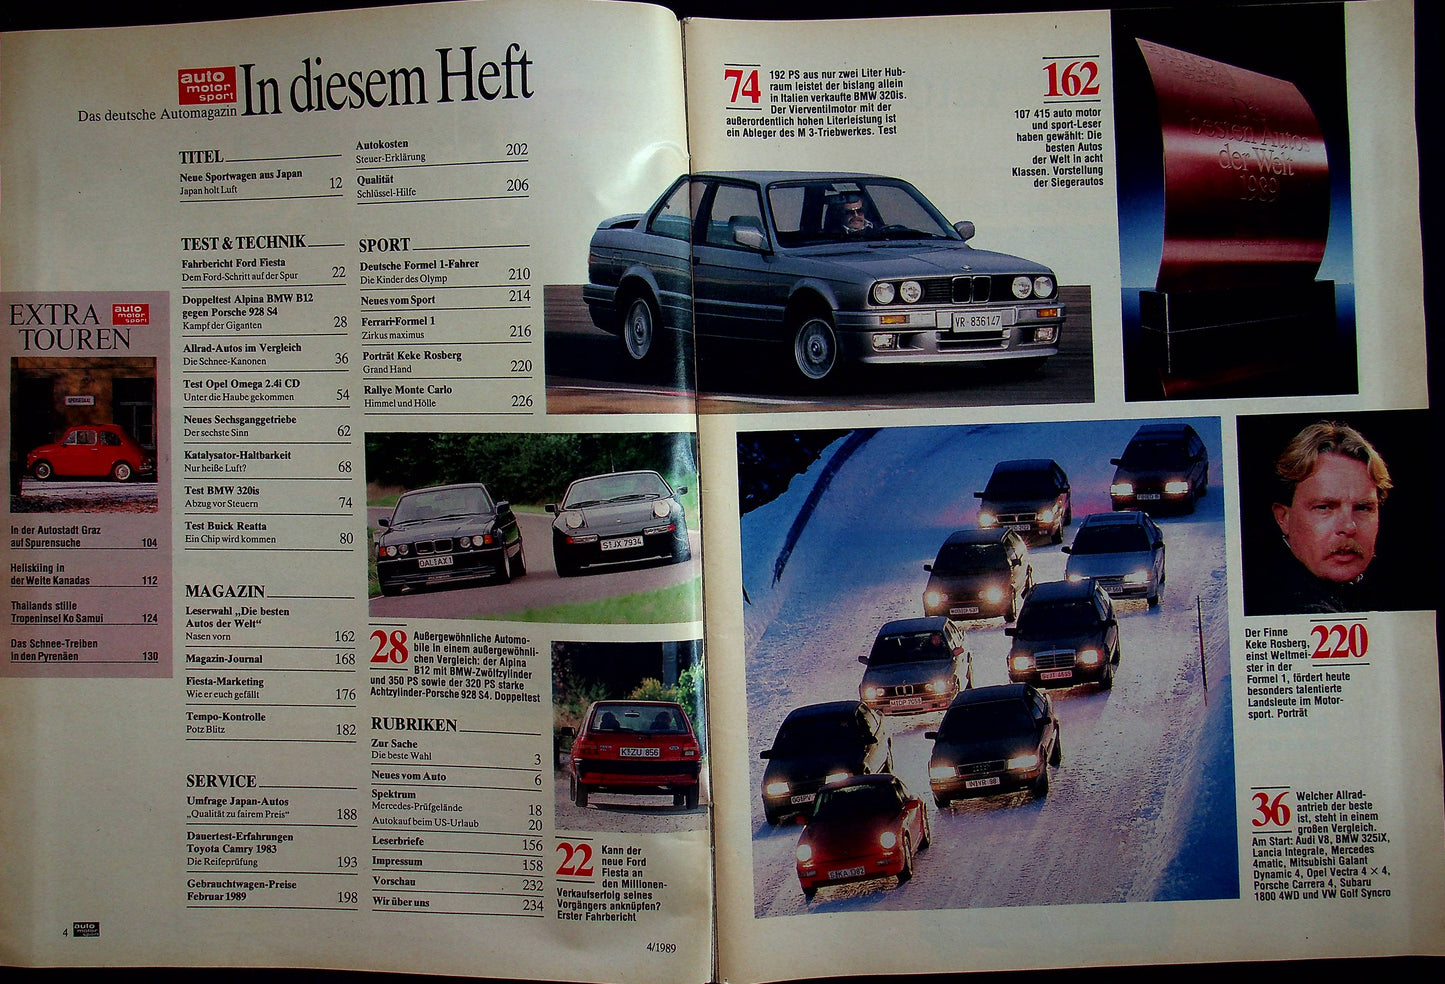 Auto Motor und Sport 04/1989